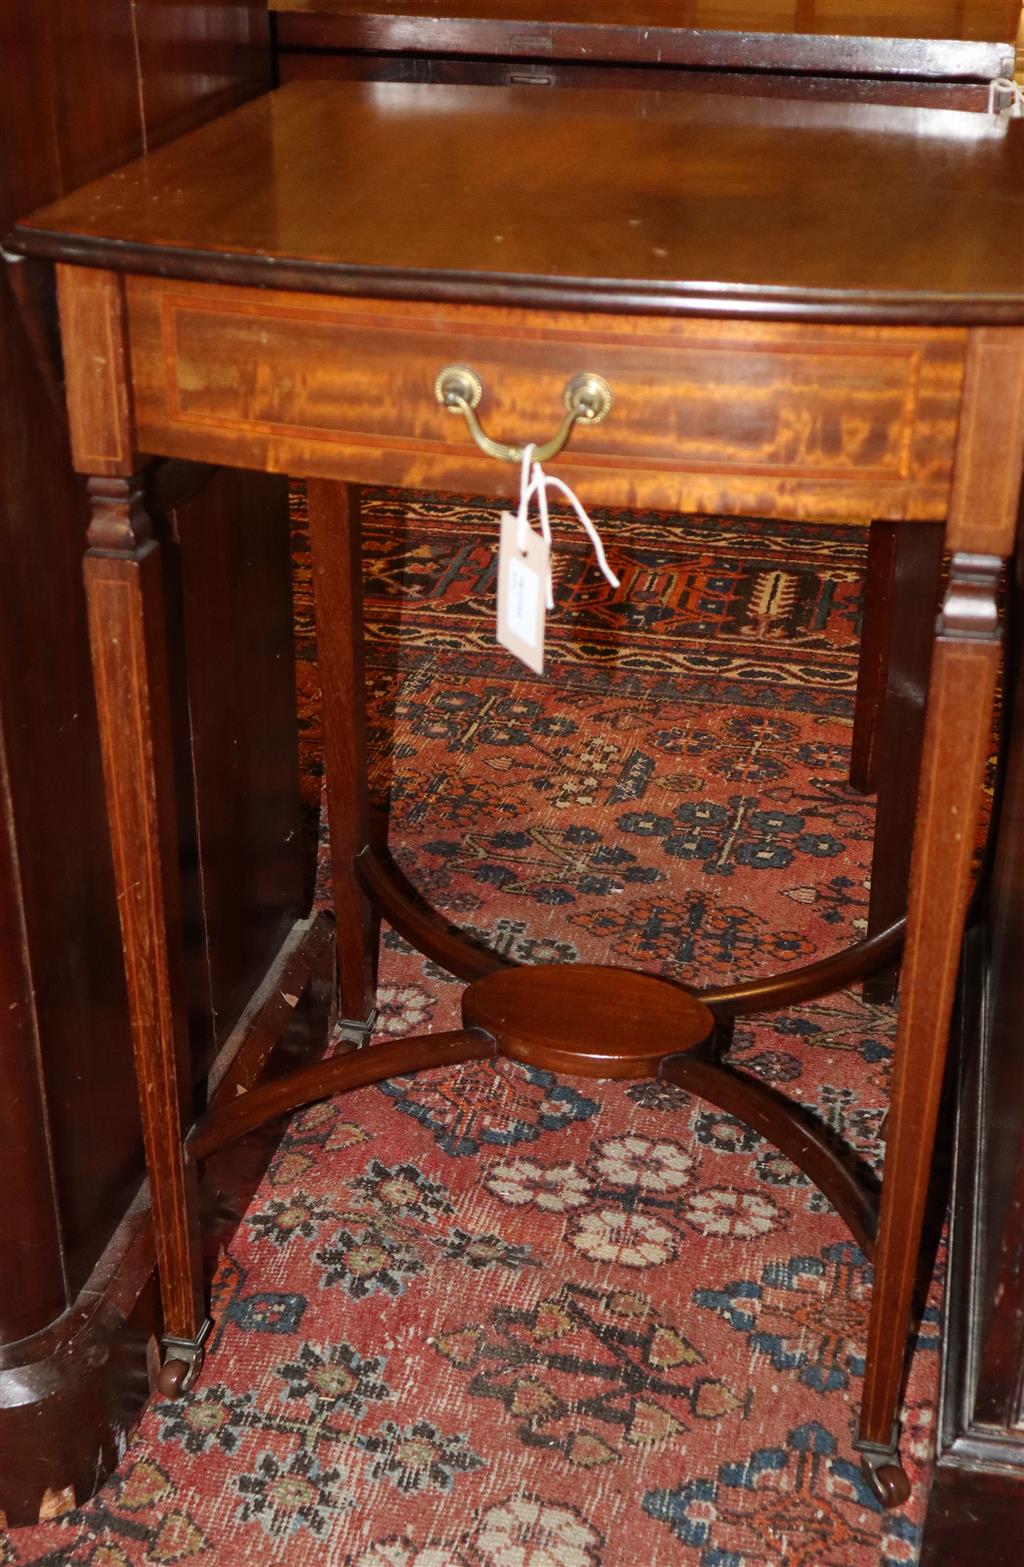 An Edwardian inlaid mahogany drop leaf Pembroke table, width 48cm, depth 48cm, height 71cm